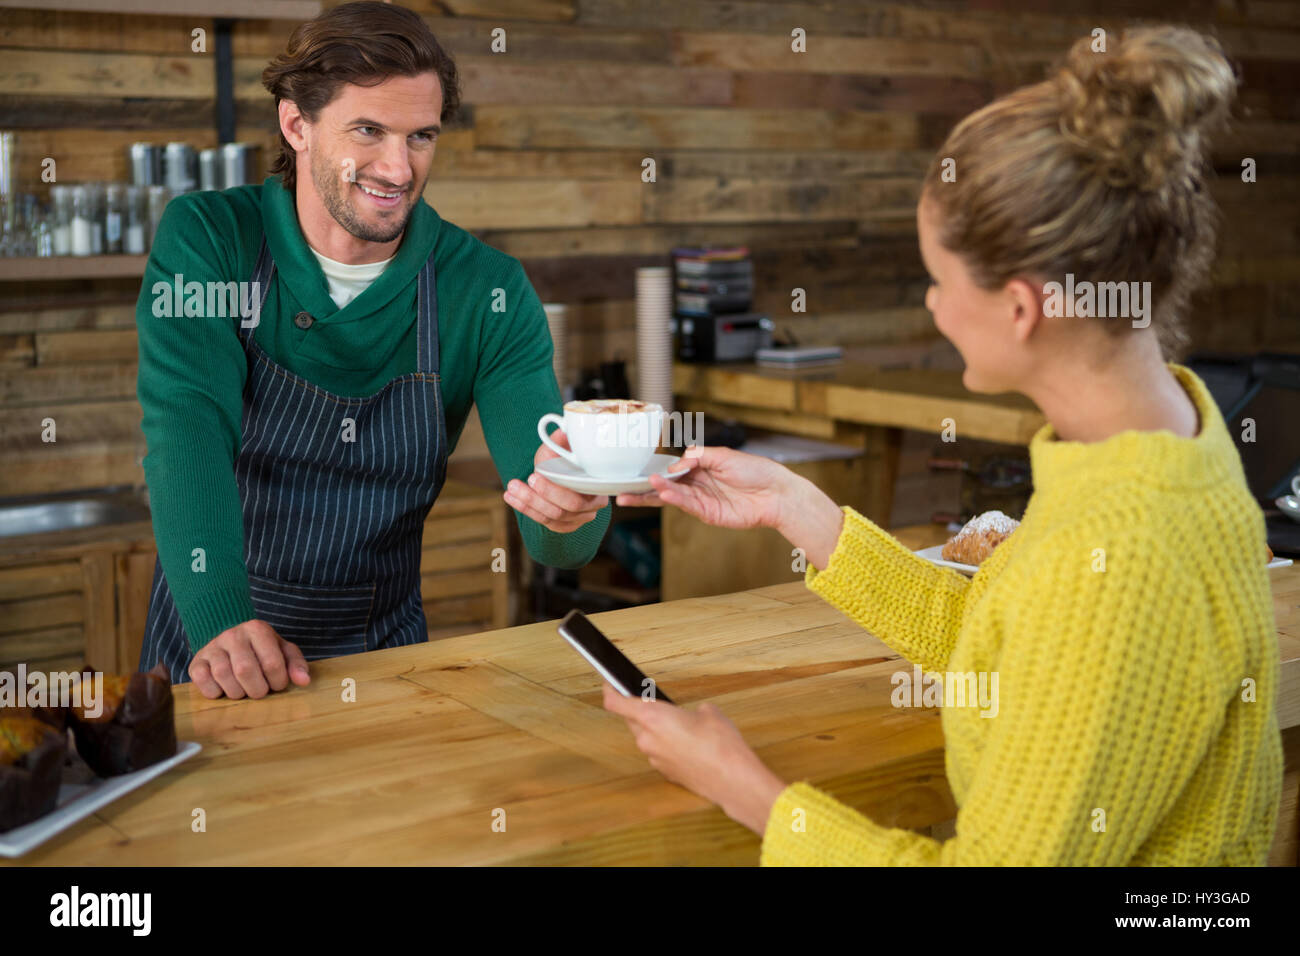 Sonriendo macho a hembra barista sirve café en la cafetería del cliente Foto de stock